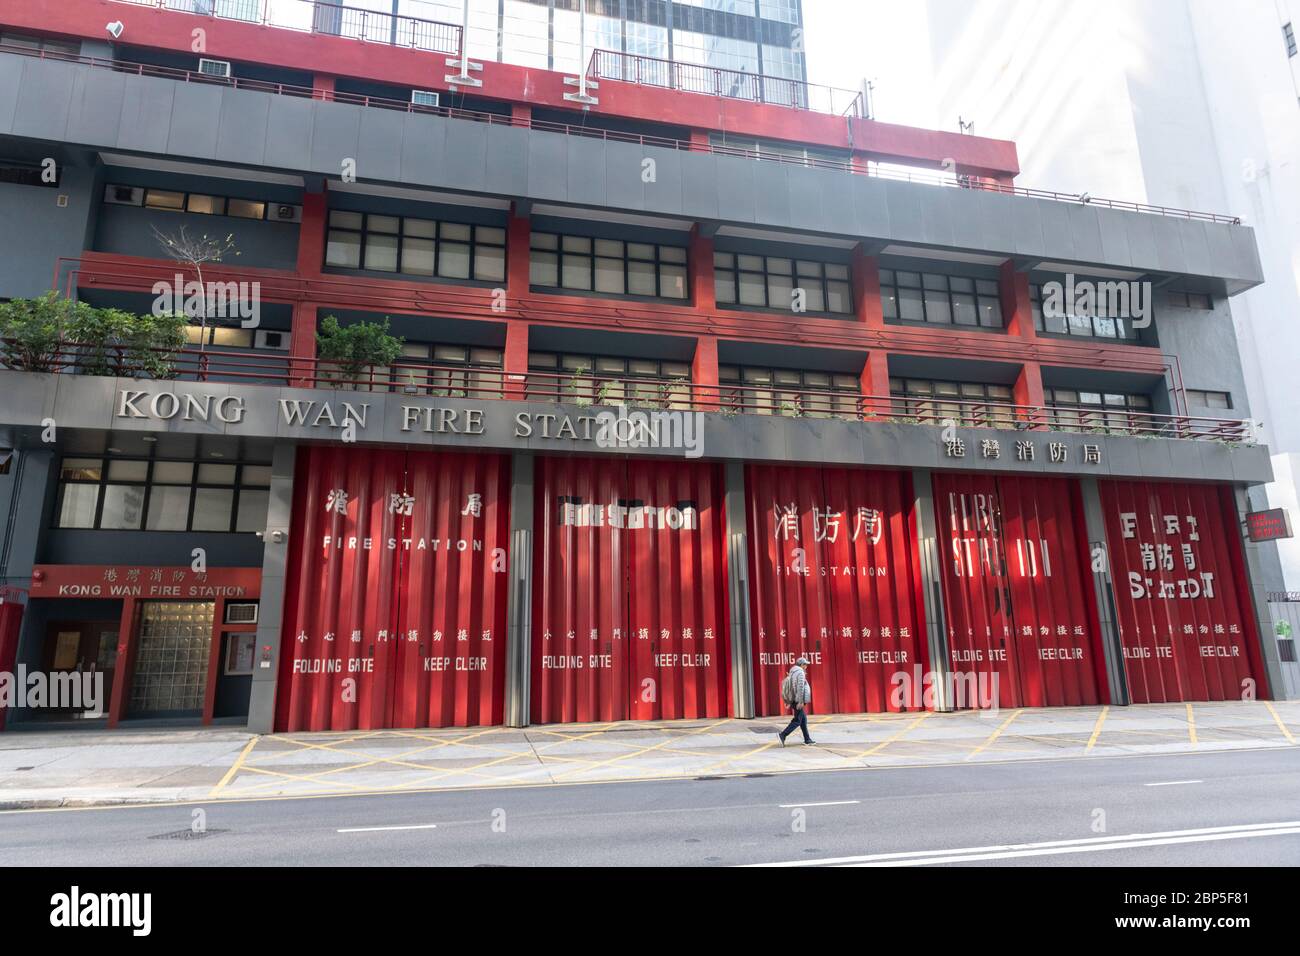 Hong Kong, Chine : 29 janvier 2020. Station de feu WAN Kong dans Harbour Road WAN Chai.les portes rouges fermées de la station de feu WAN Kong avec différentes langues a Banque D'Images